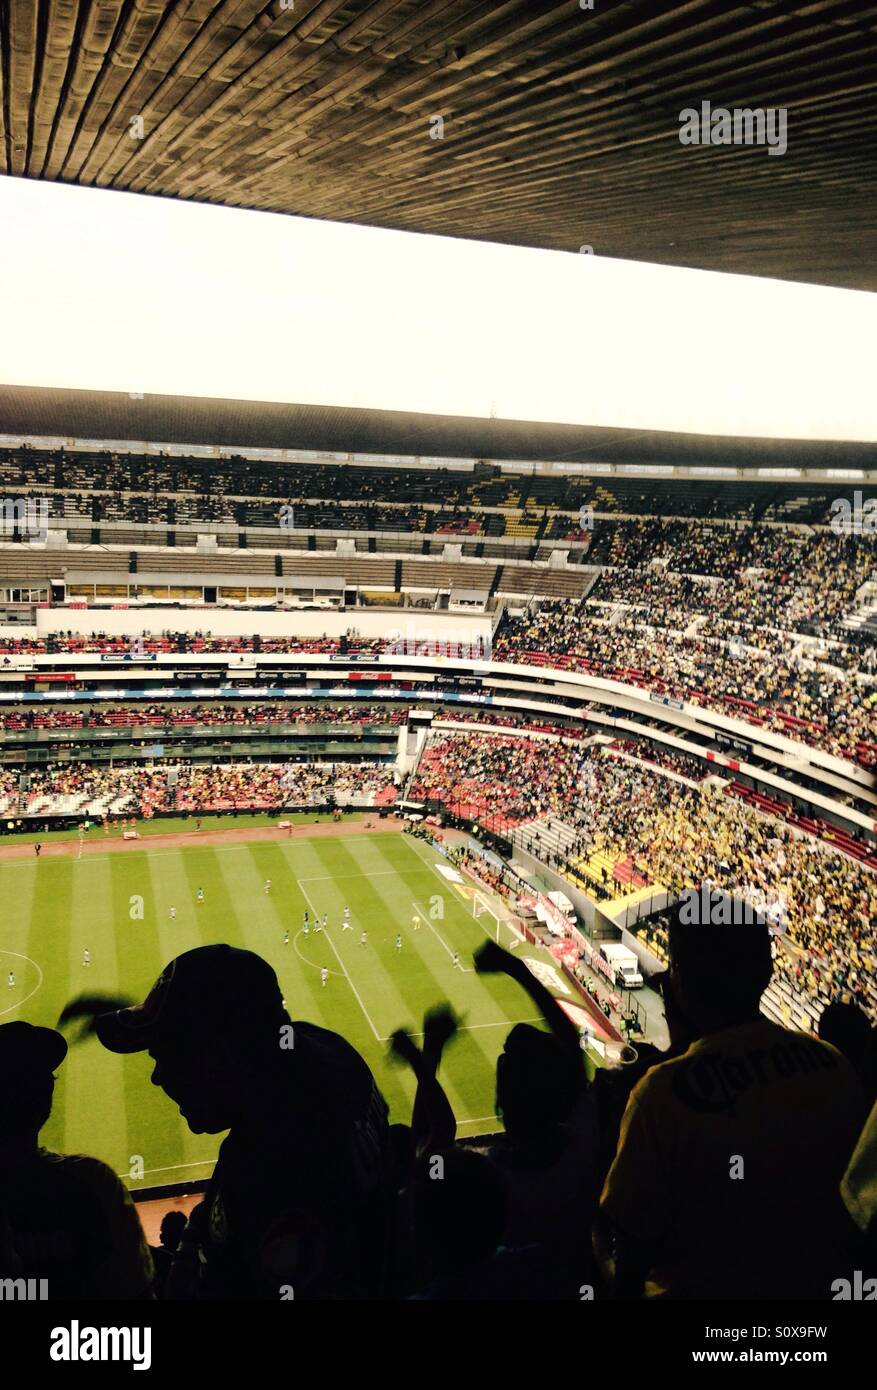 Estadio Azteca (Azteca Stadium ). Mexico City. Stock Photo